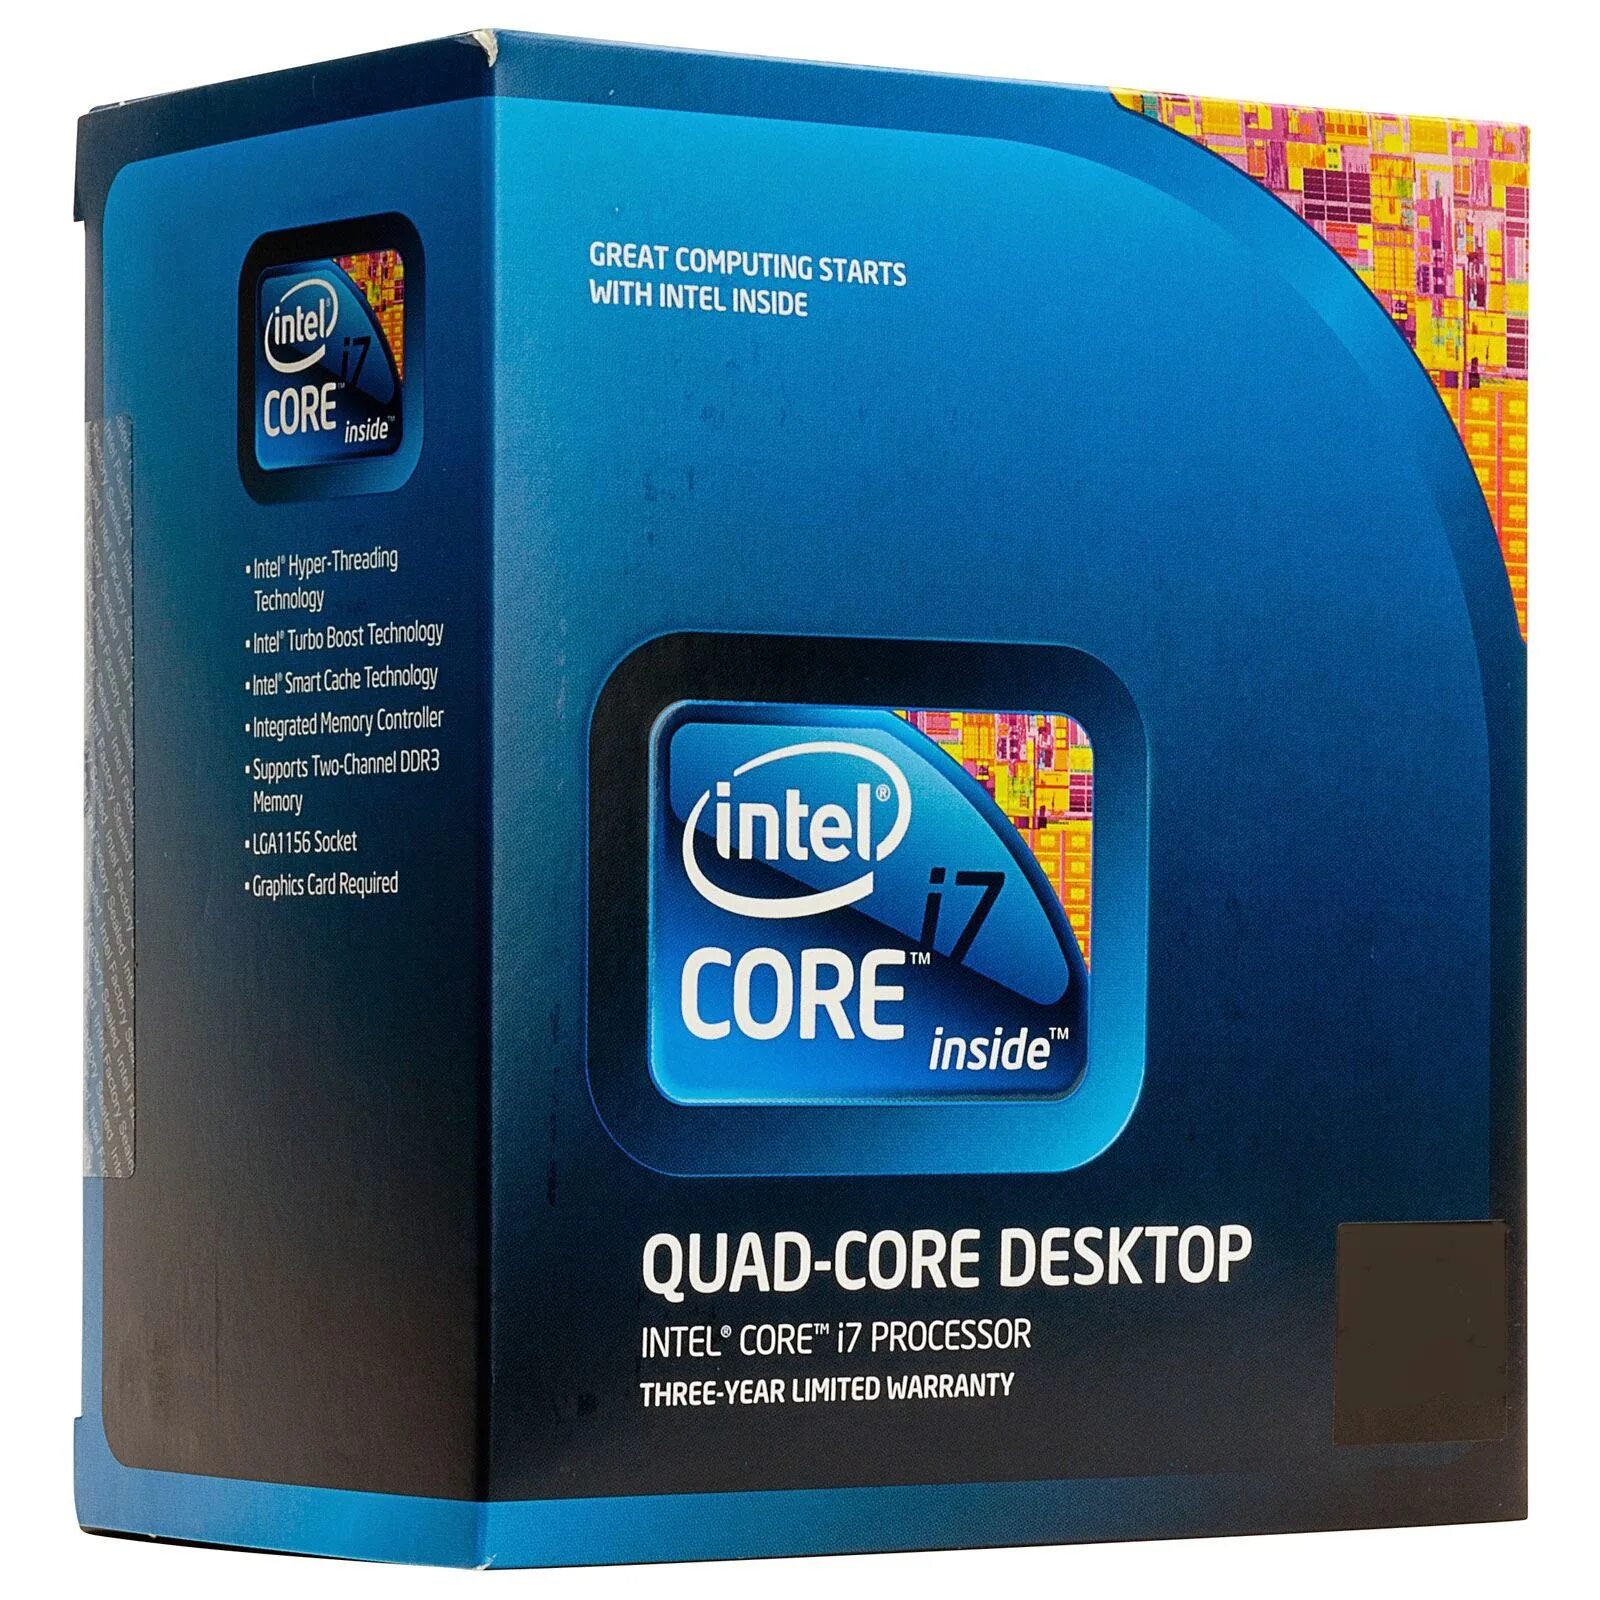 Intel i7 частота. Intel Core i7 3000. Intel Core i7 ДНС. Intel Core i7 4780k. Intel Core i7 Box.